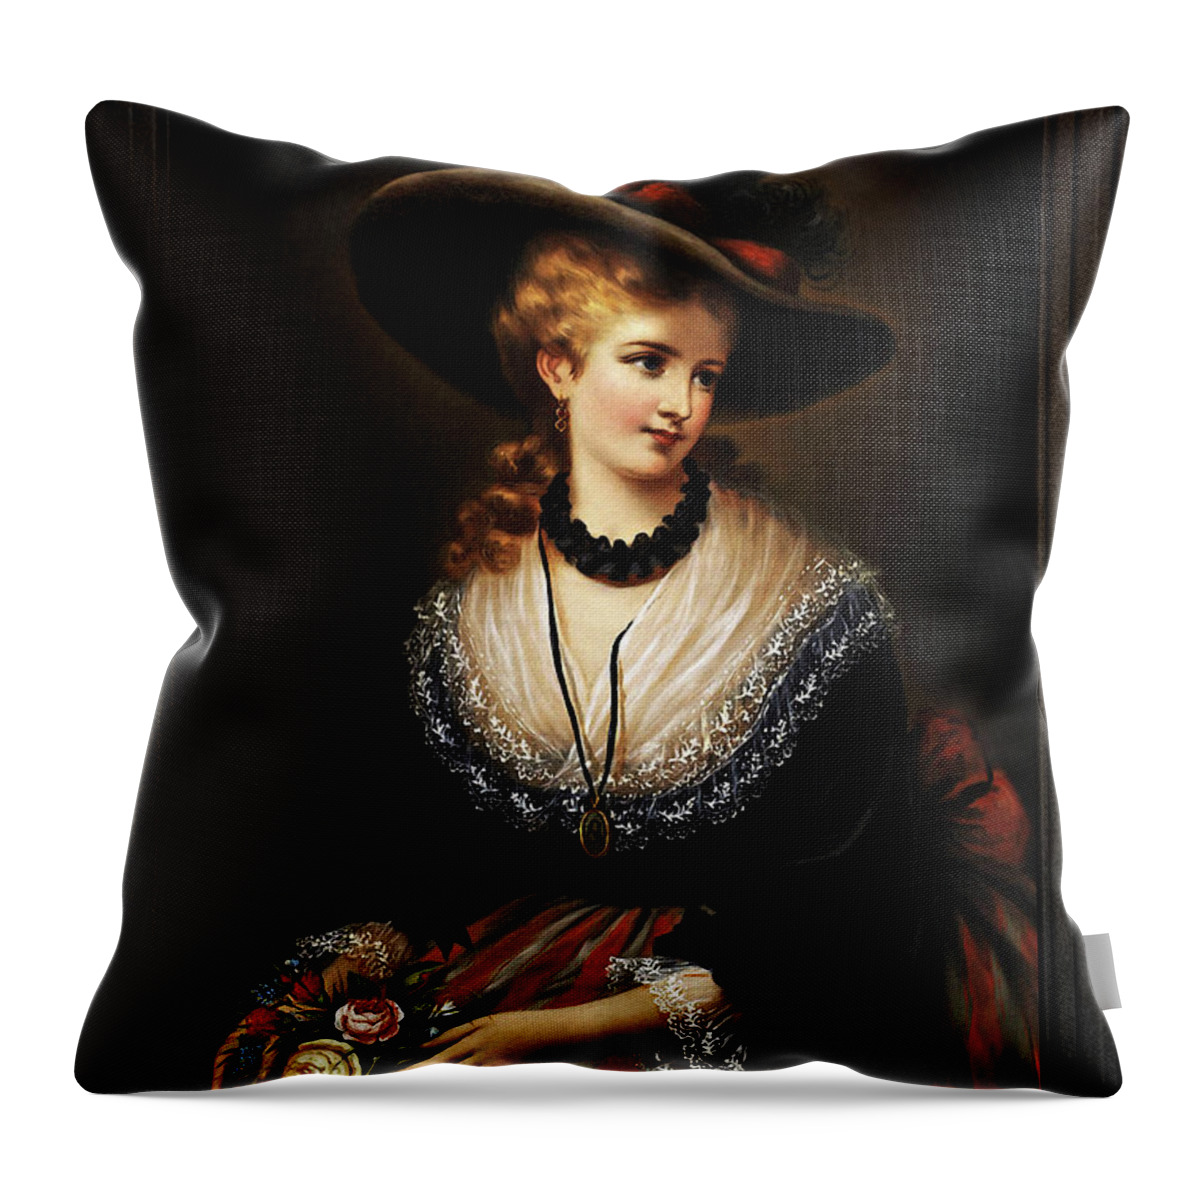 Portrait Of A Noble Woman Throw Pillow featuring the painting Portrait Of A Noble Woman by Alois Eckhardt by Rolando Burbon